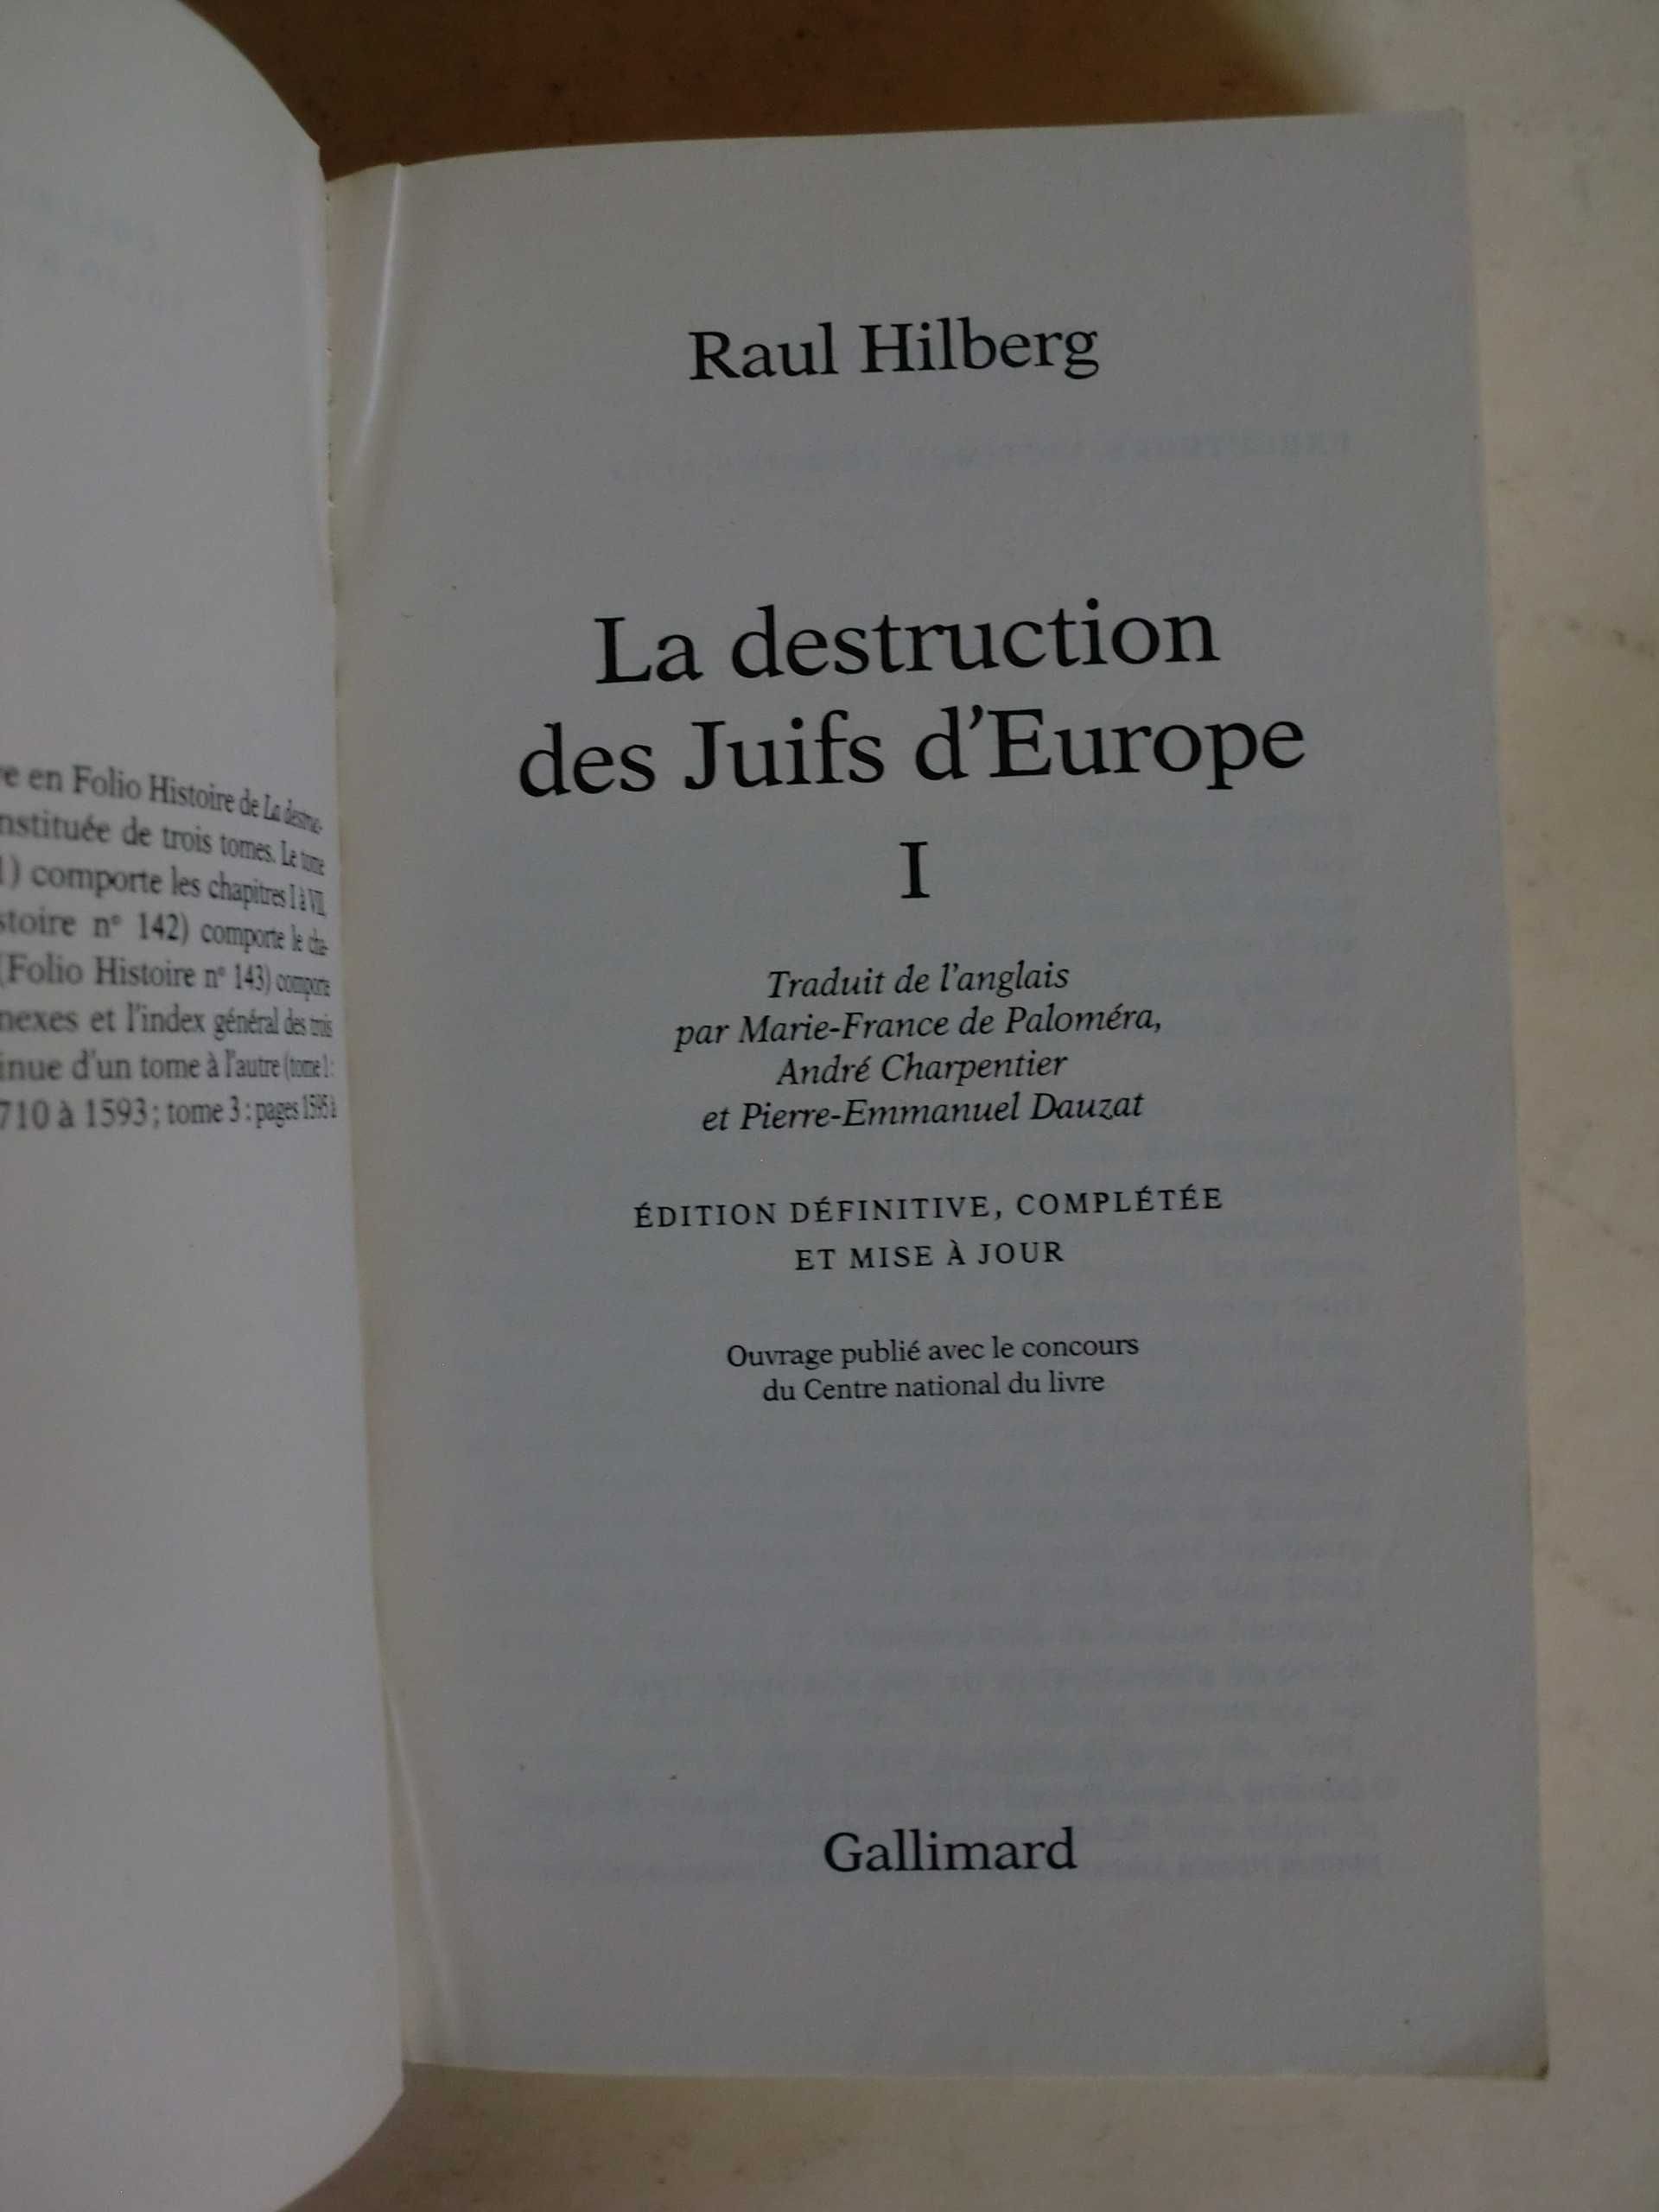 La destruiction des Juifs d´Europe I
de Raul Hilberg